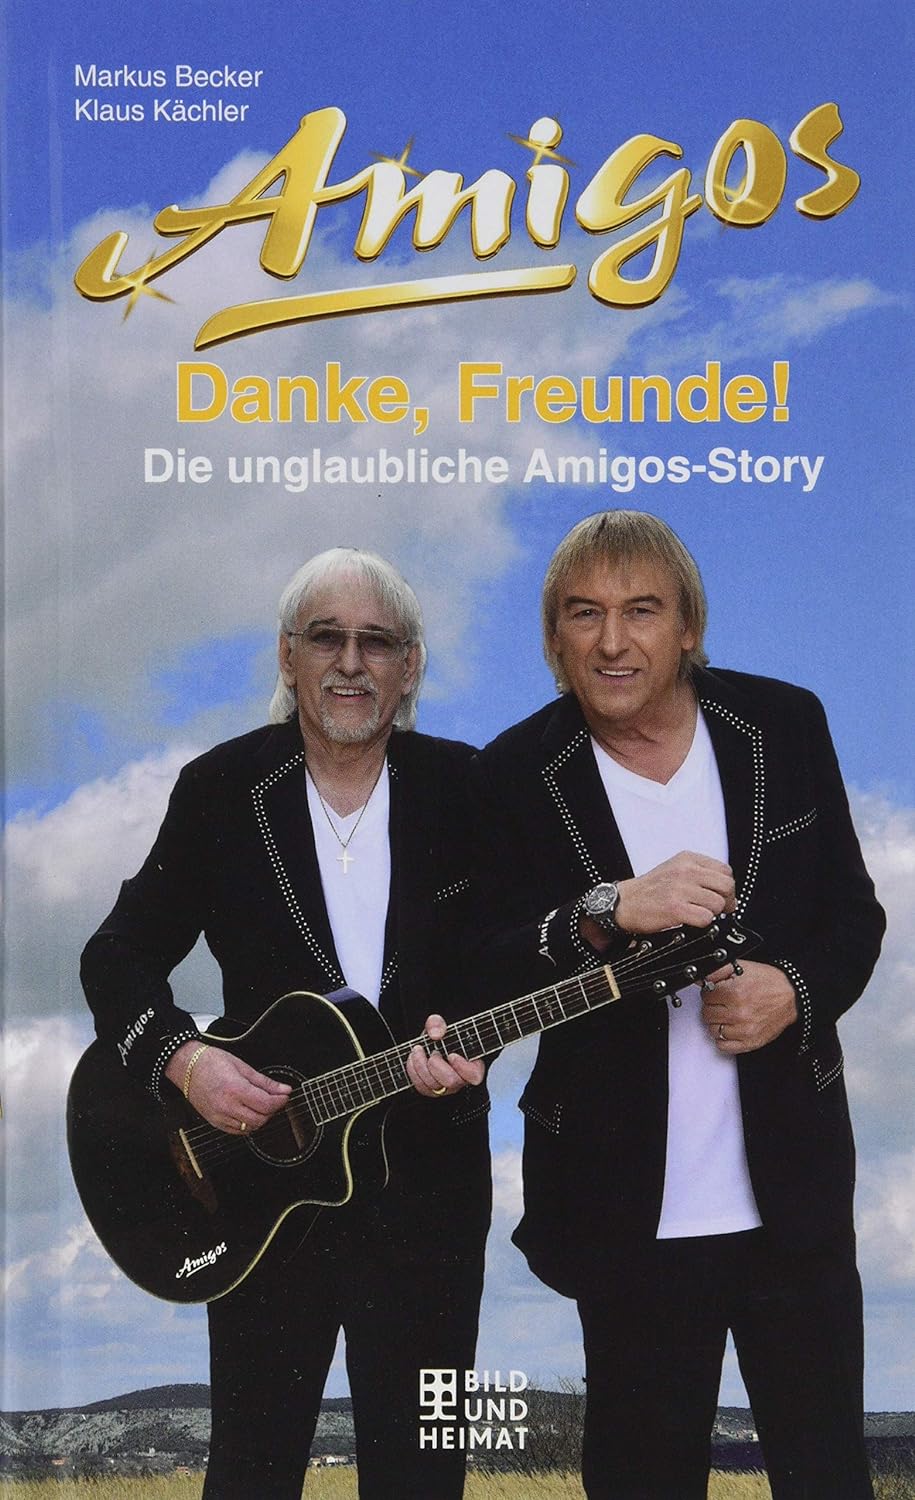 Danke, Freunde!: Die unglaubliche Amigos-Story [Hardcover] Markus Becker and Klaus Kächler